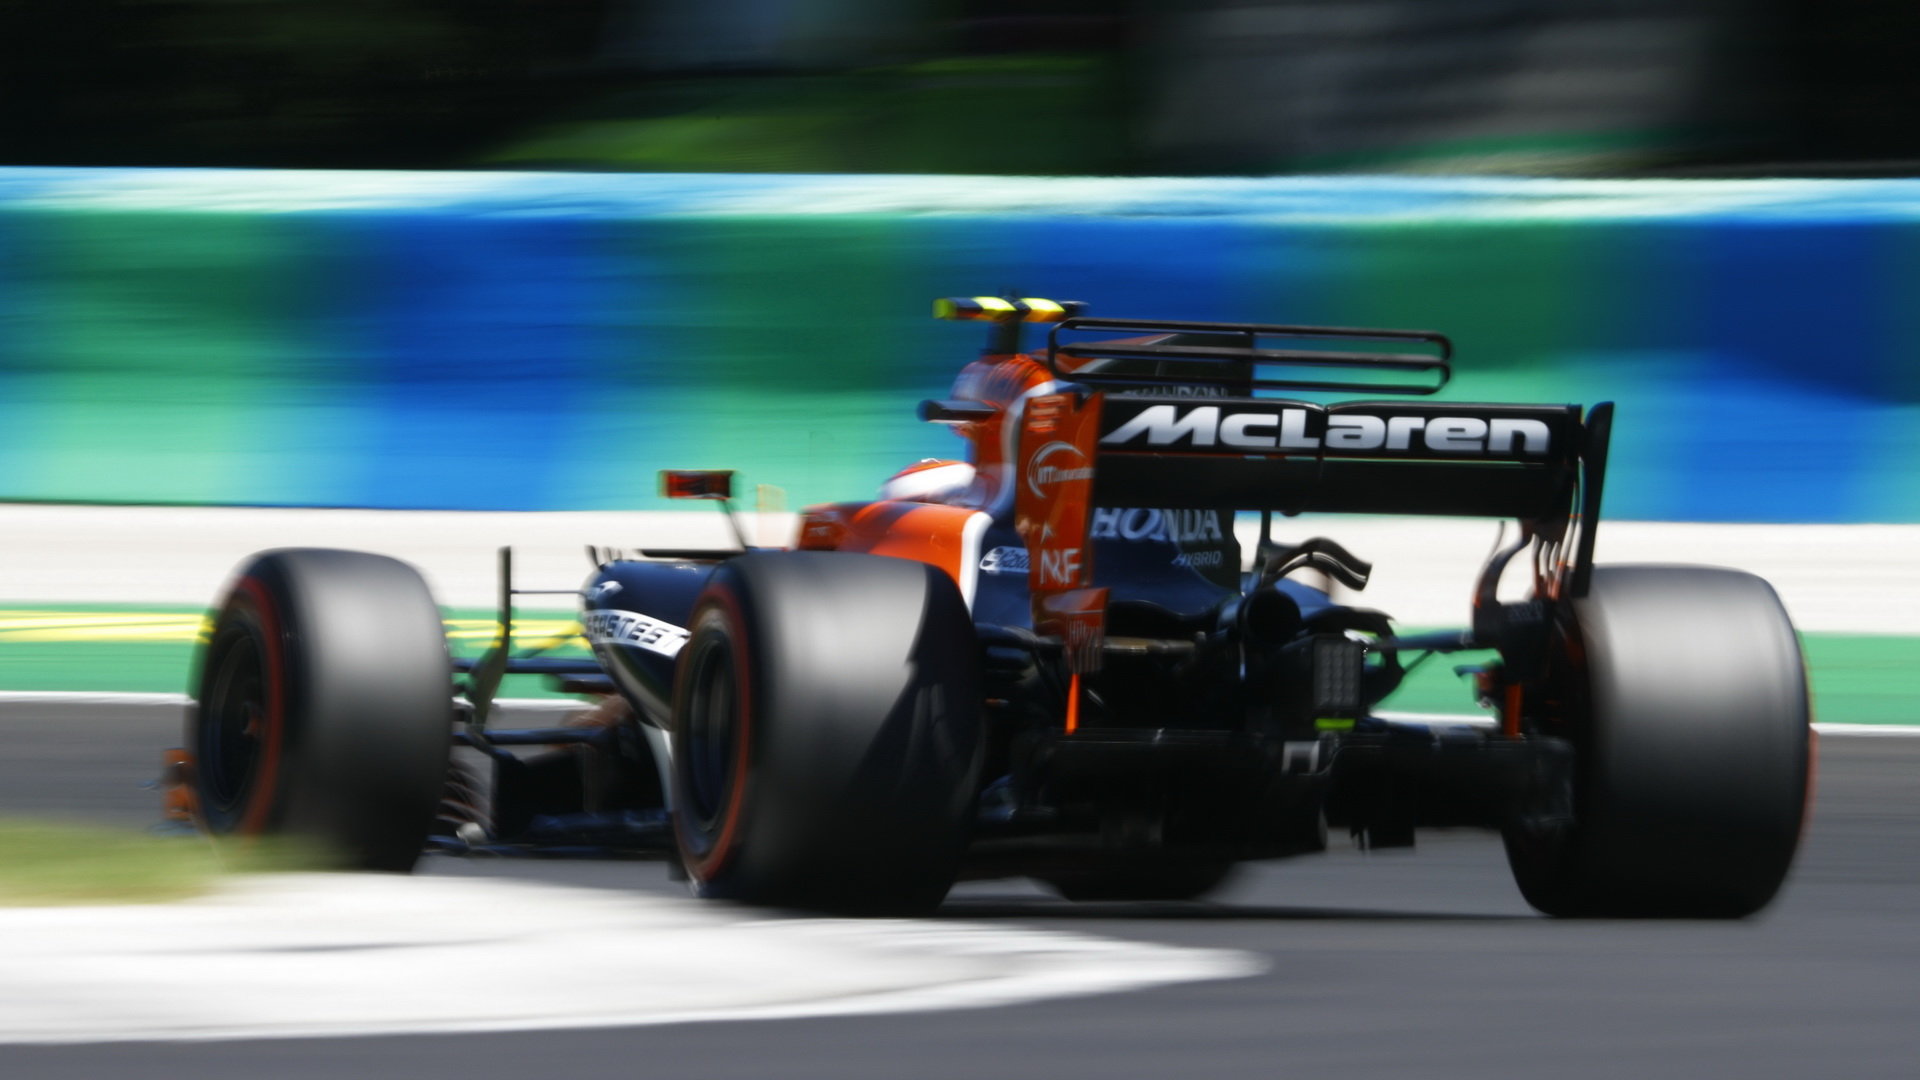 McLaren s Hondou podal v Maďarsku skvělý výkon - pouze tři týmy si odvezly více bodů